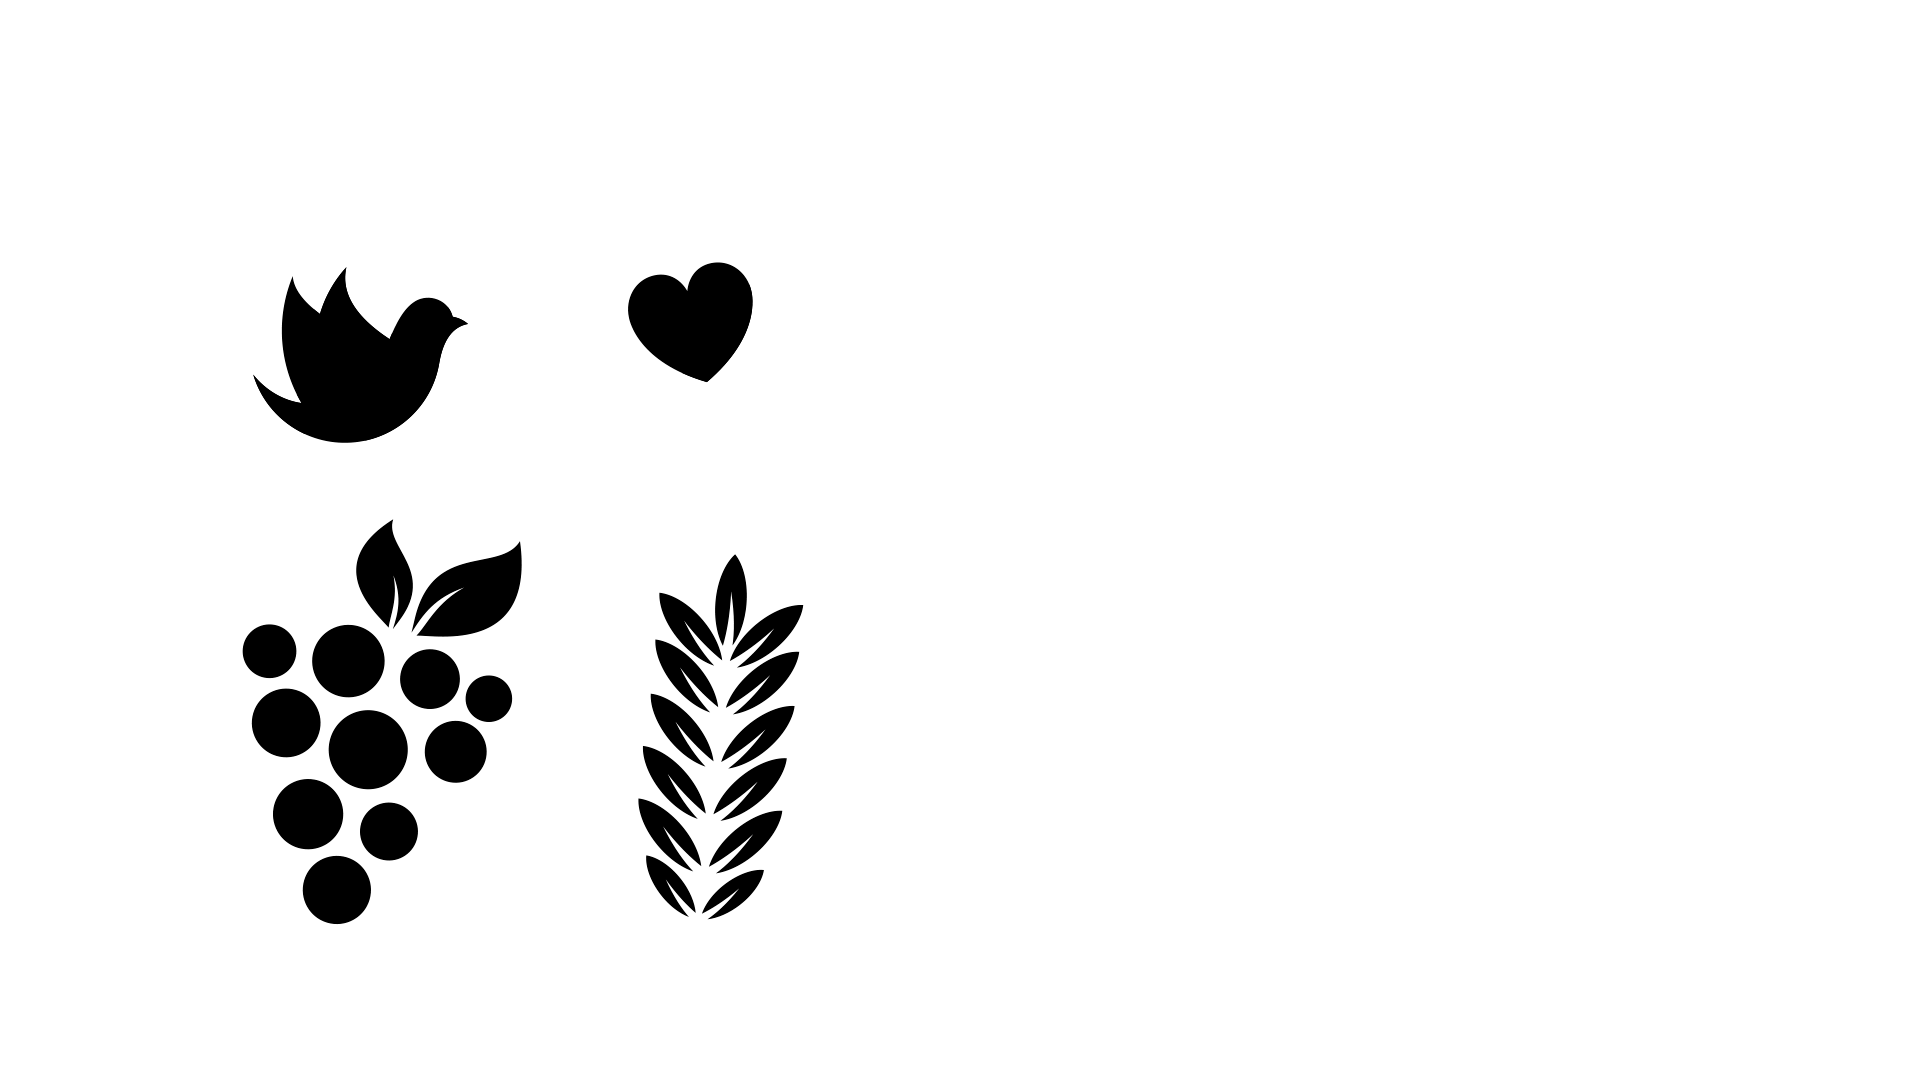 Ministerio Sanador Vino Nuevo